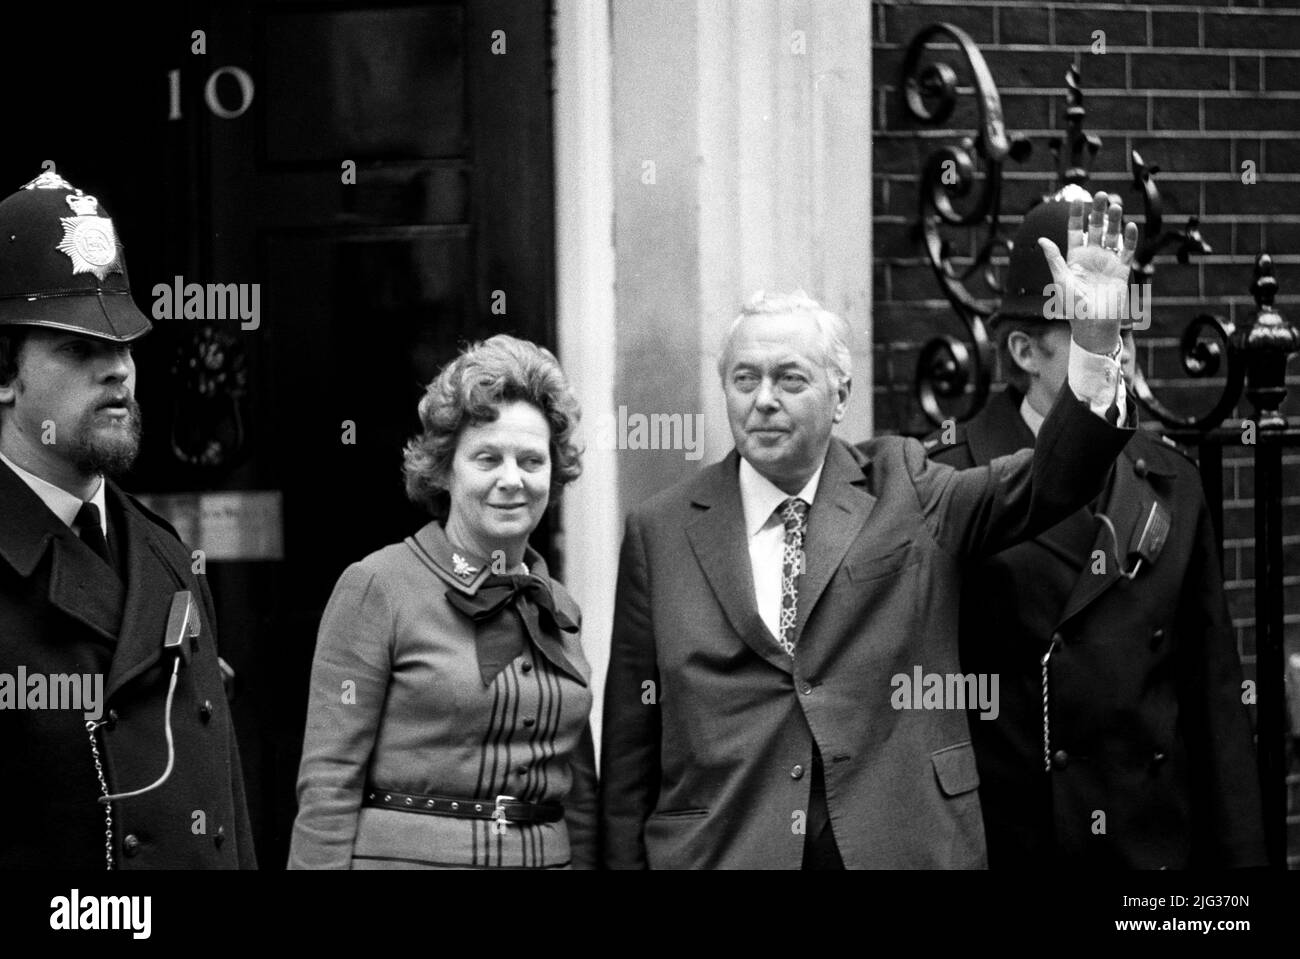 Foto de archivo de fecha 11/10/74 del Primer Ministro Harold Wilson se dirige a la multitud cuando llega a Downing Street nº 10 con su esposa Mary. Boris Johnson ha superado a seis primeros ministros con el menor tiempo en el cargo desde 1900: Andrew Bonar Law (211 días en 1922-23), Alec Douglas-Home (364 días en 1963-64), Anthony Eden (644 días en 1955-57), Henry Campbell-Bannerman (852 días en 1905-08), Gordon Brown (1.049 días en 2007-10) y Neville Chamberlain (1.078 días en 1937-40). Fecha de emisión: Jueves 7 de julio de 2022. Foto de stock